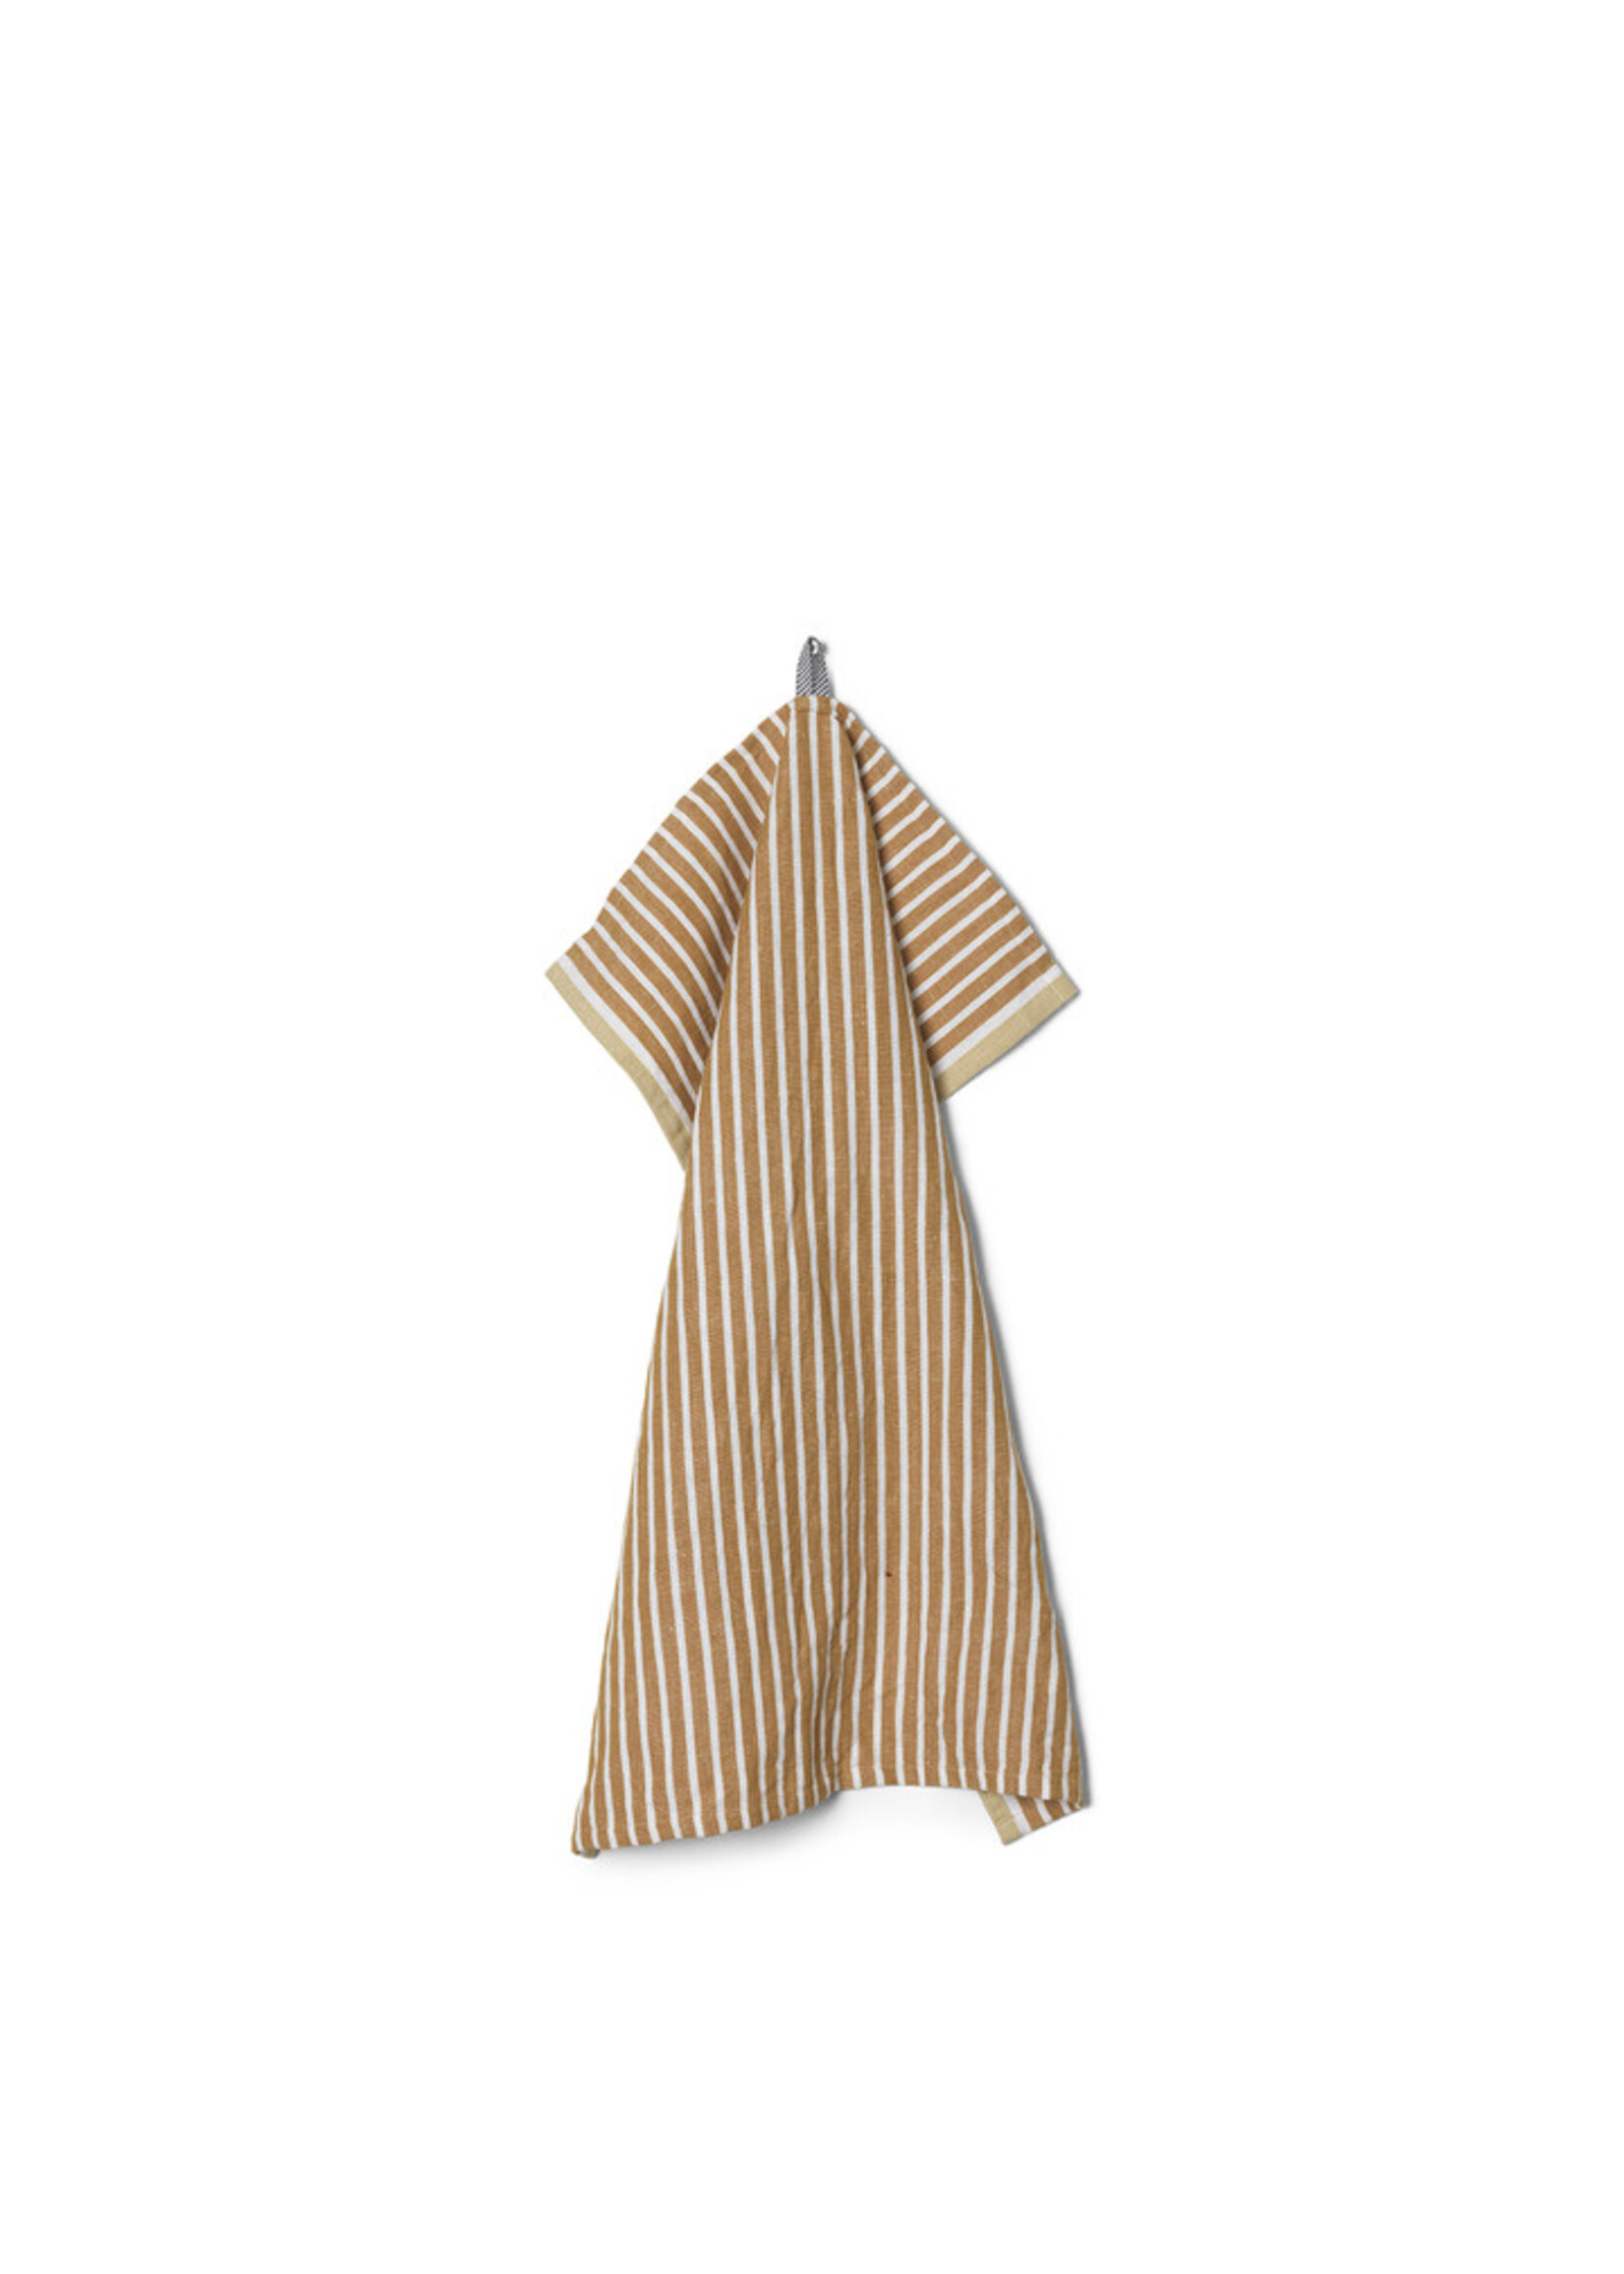 Ferm Ferm - hale towel Golden Brown/Silver Fern